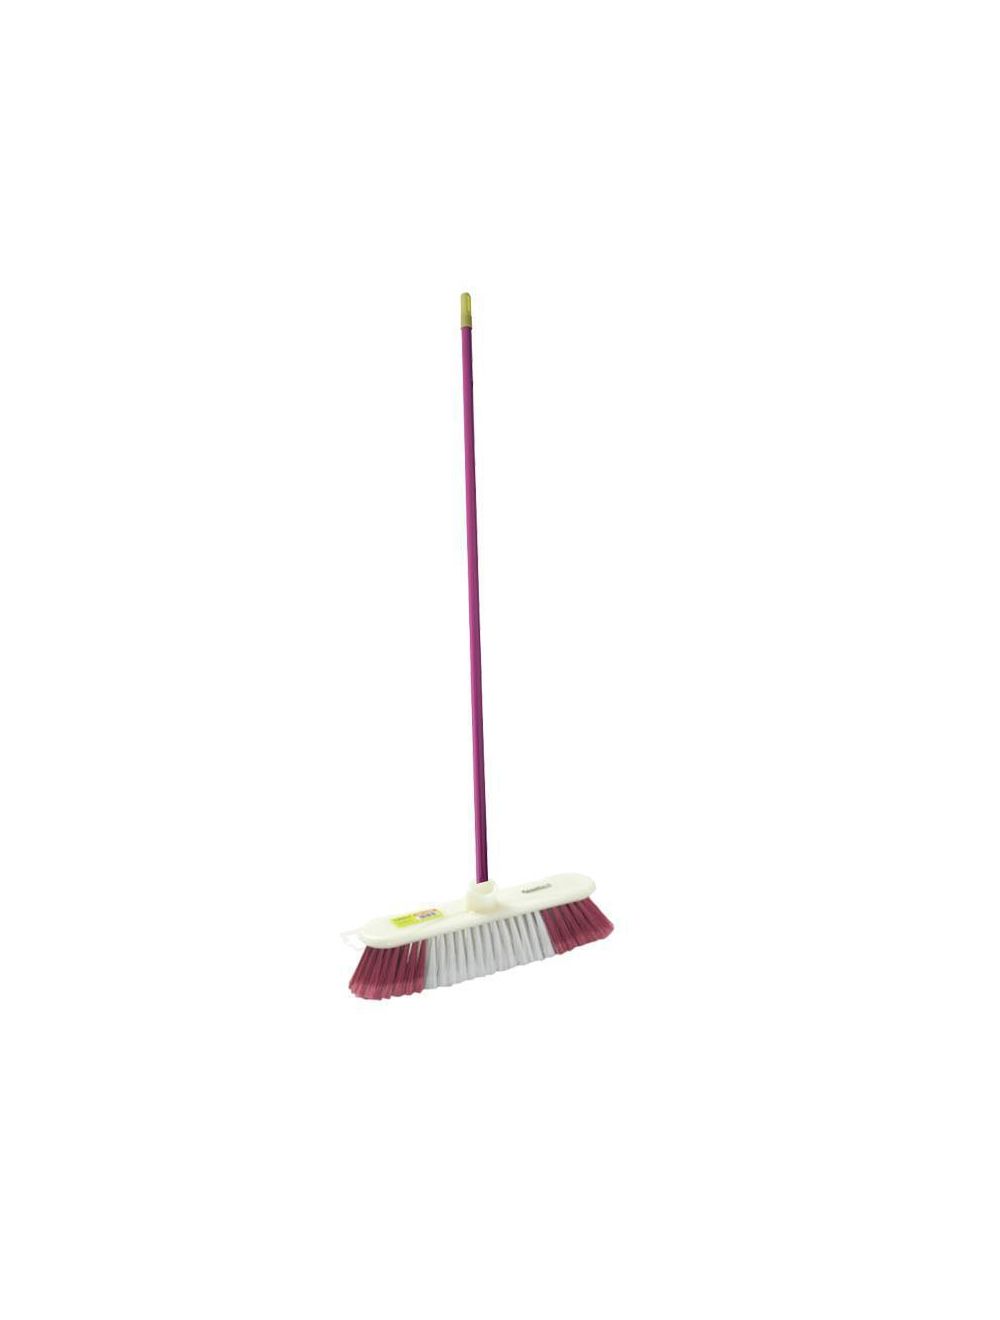 Royalford RF2369-FB Floor Broom with Metal Handle, 120 CM